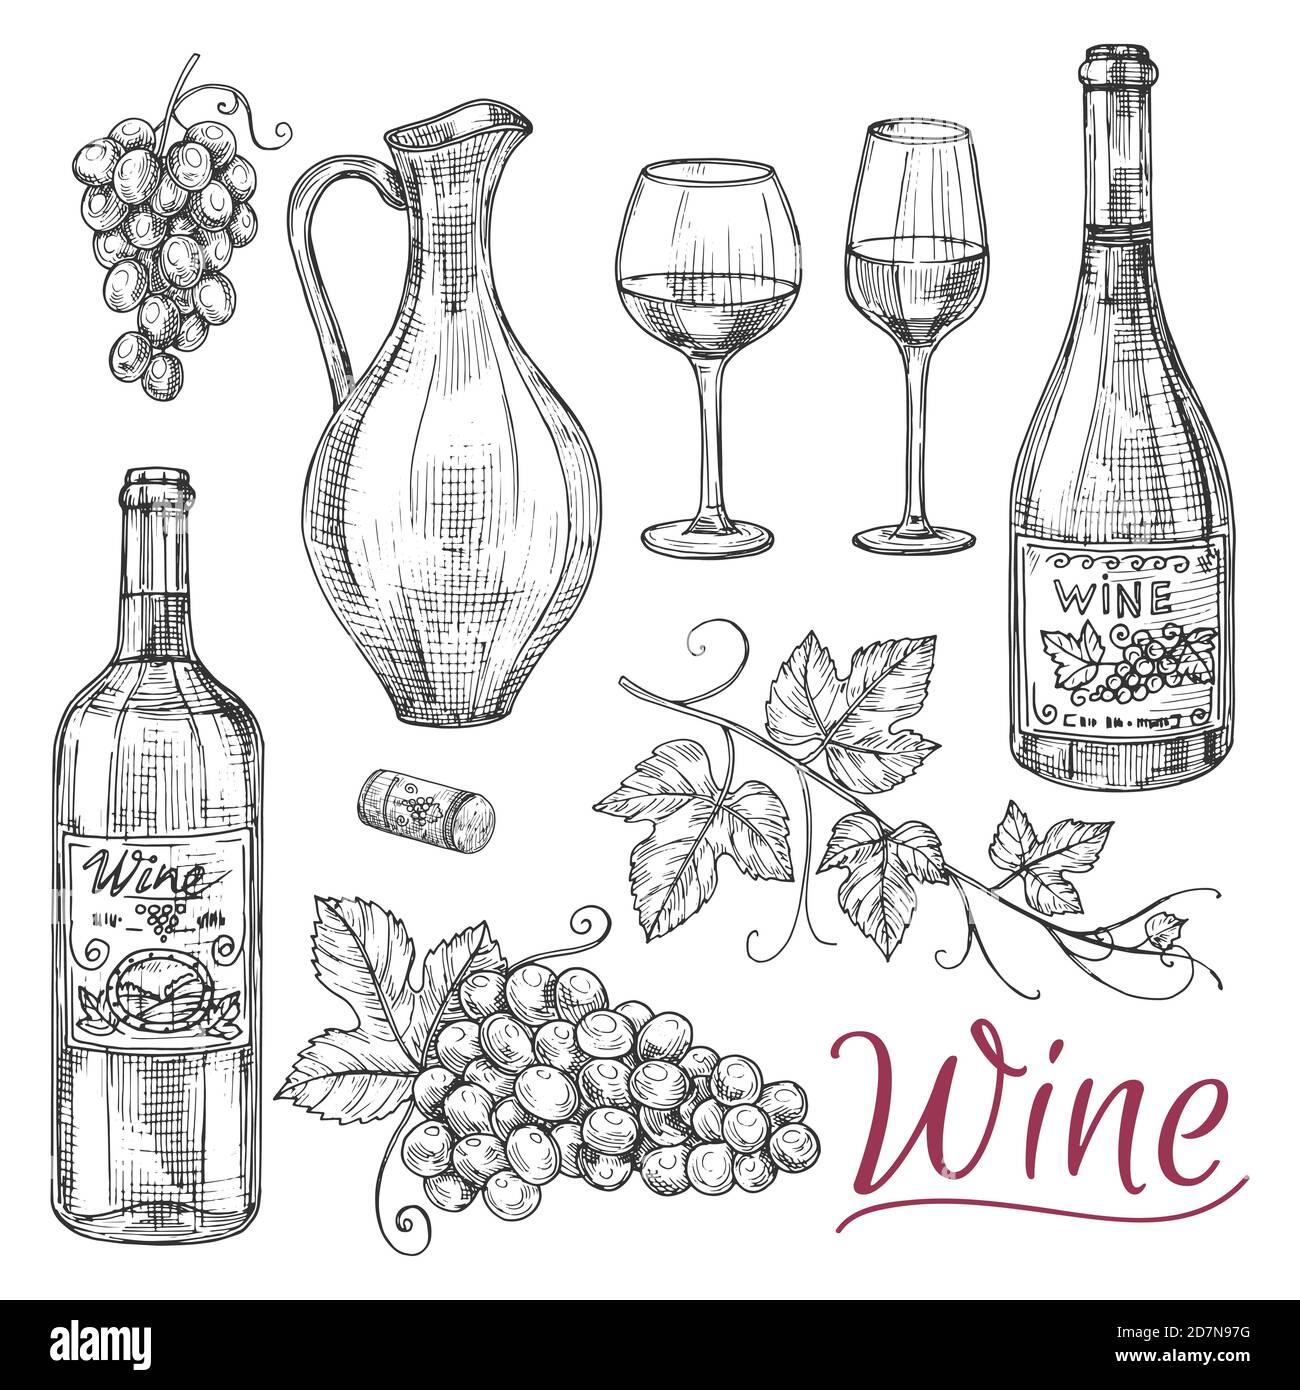 Schizzi elementi vettoriali del vino - bottiglie, bicchieri, uva e caraffa. Illustrazione di bevande alcoliche, bevande in caraffa, bottiglia di vino Illustrazione Vettoriale